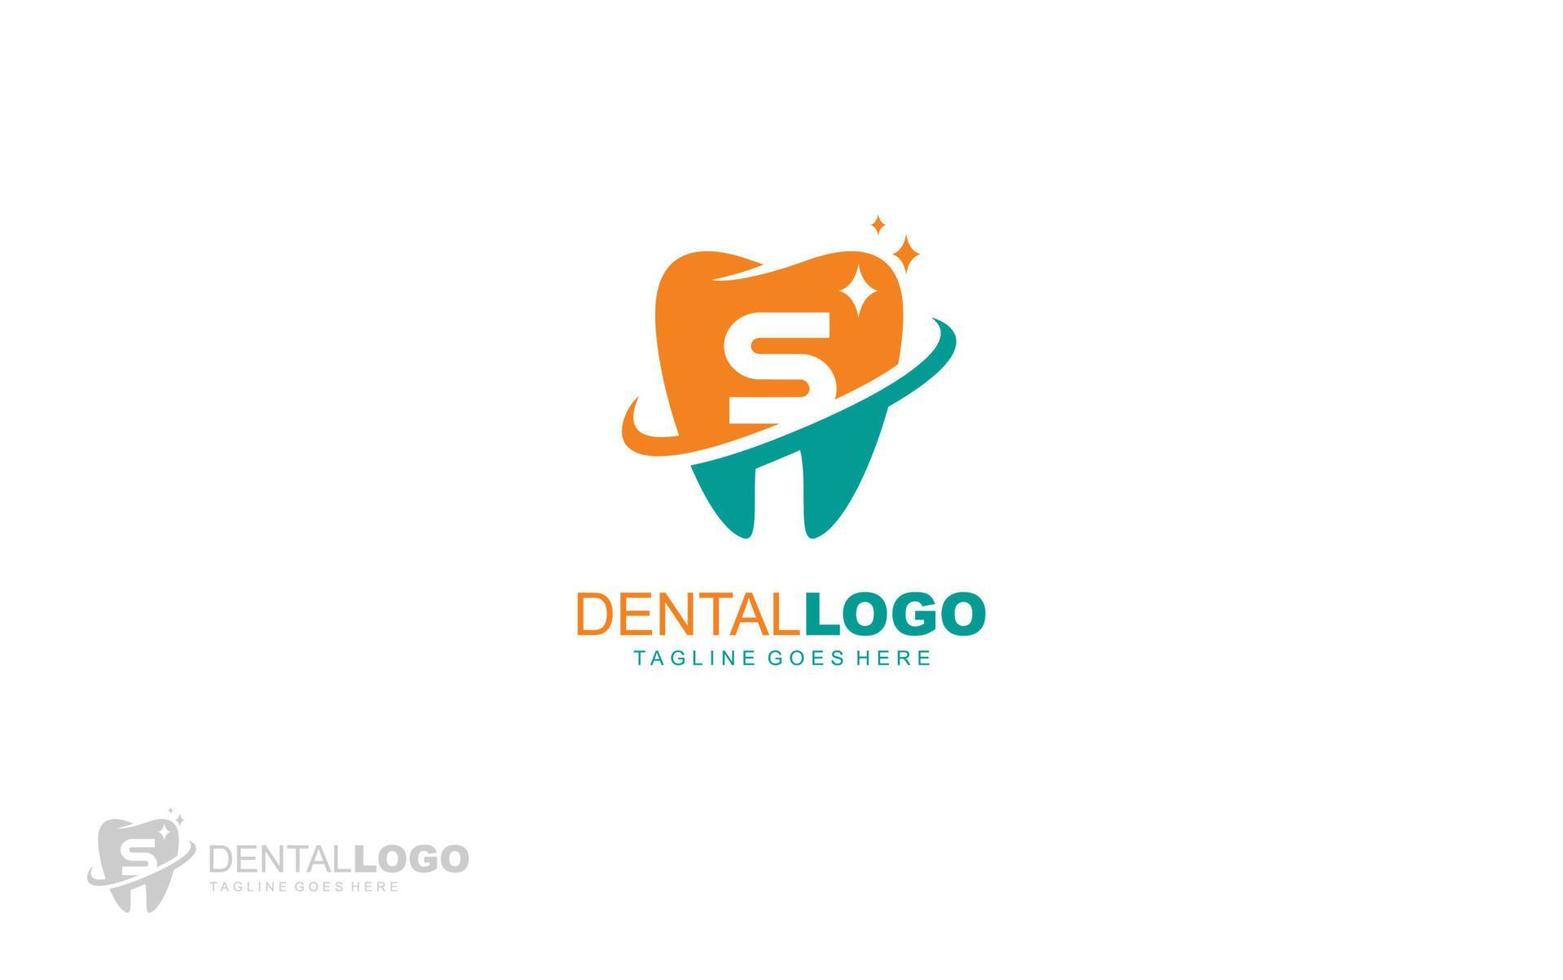 s logo tandarts voor branding bedrijf. brief sjabloon vector illustratie voor uw merk.